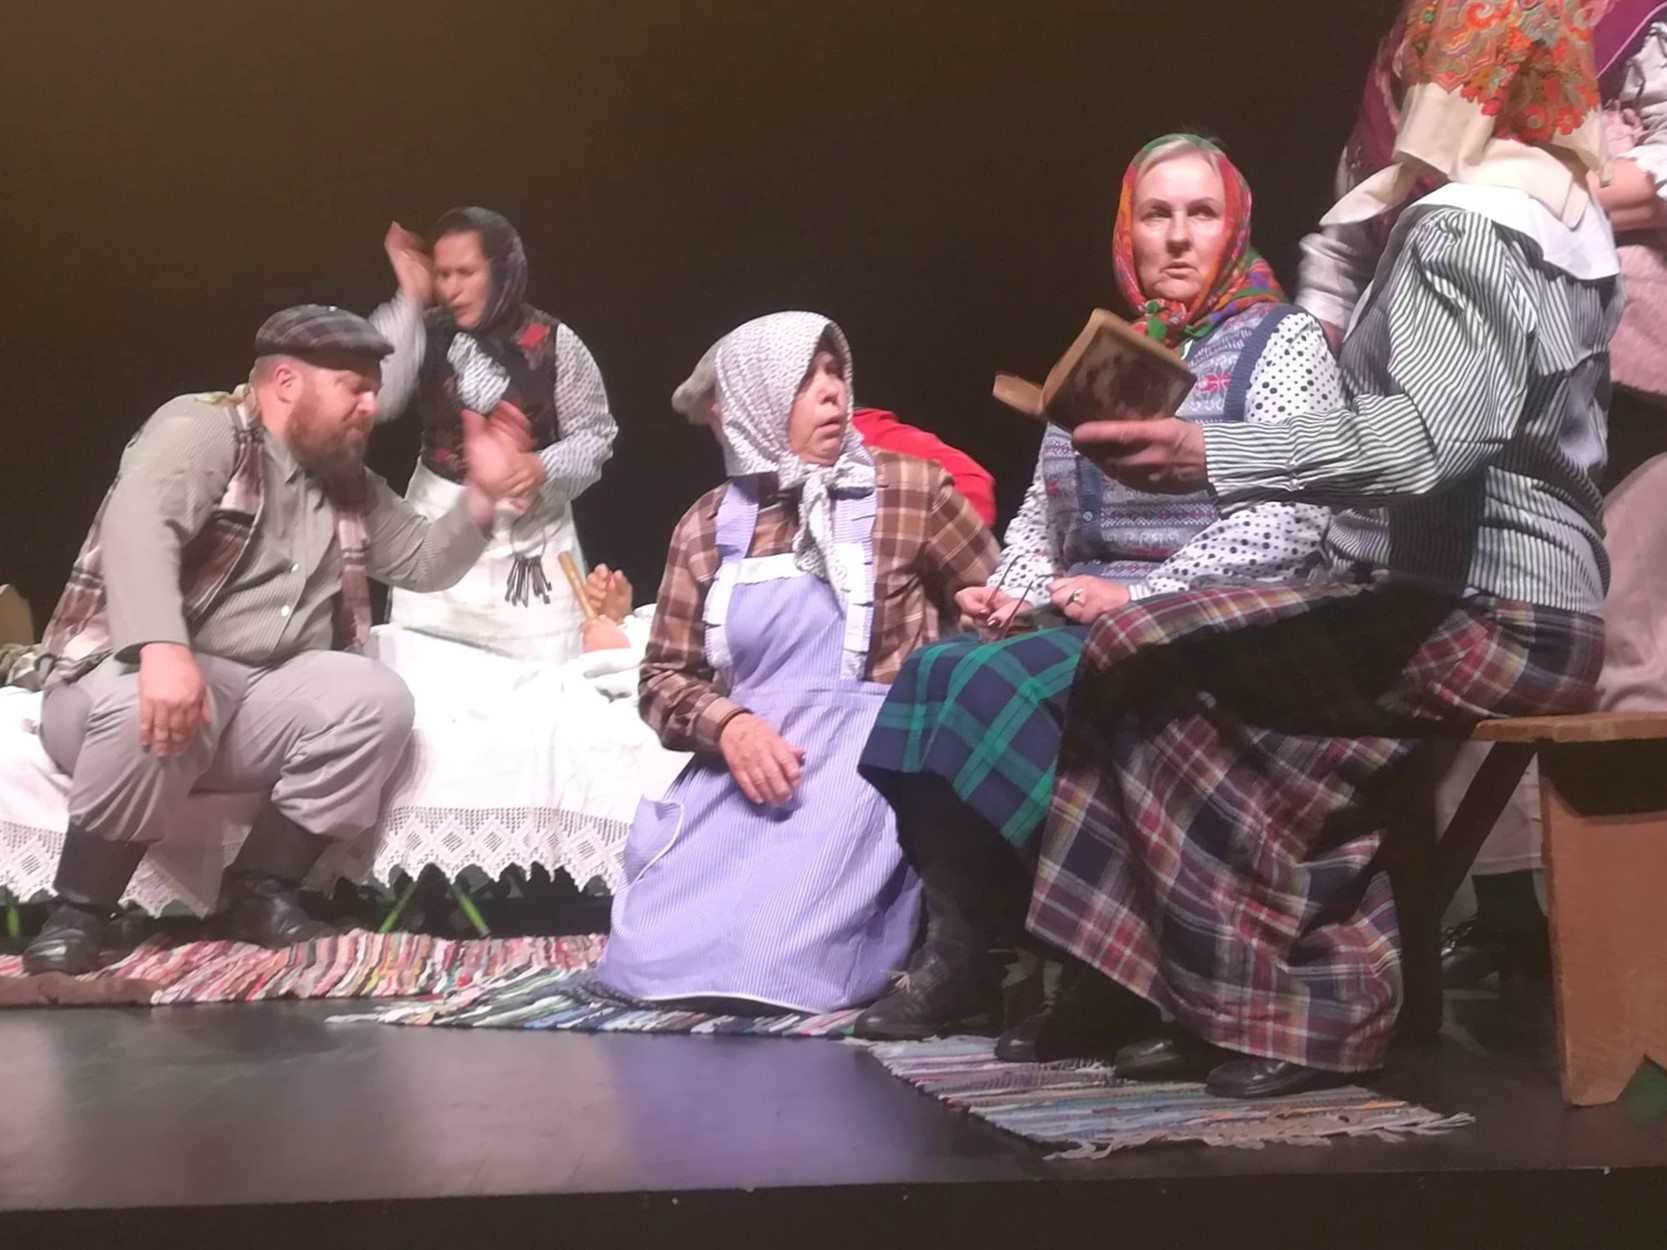 Girdžių klojimo teatro „Mituvis“ artistai dalyvavo XXXII-ojoje Lietuvos klojimo teatrų krivūlėje Šakiuose